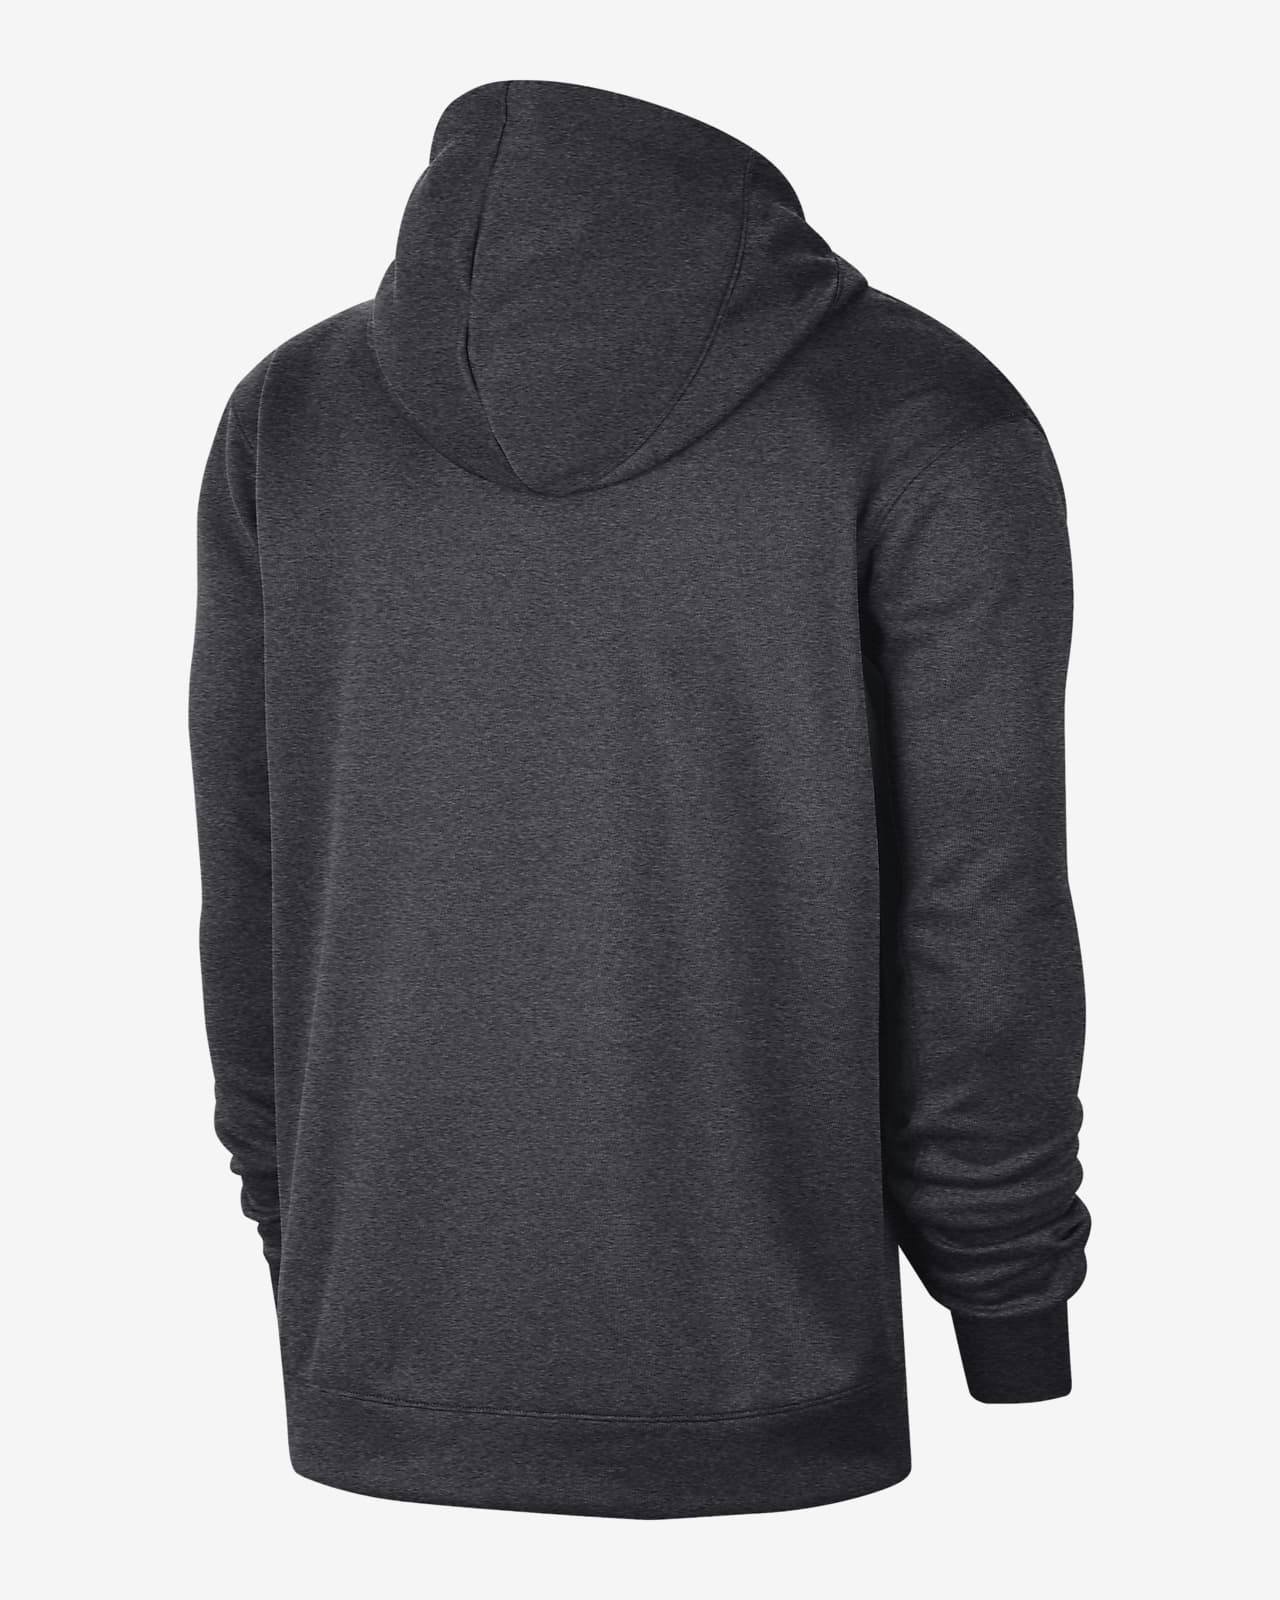 nike black pullover hoodie